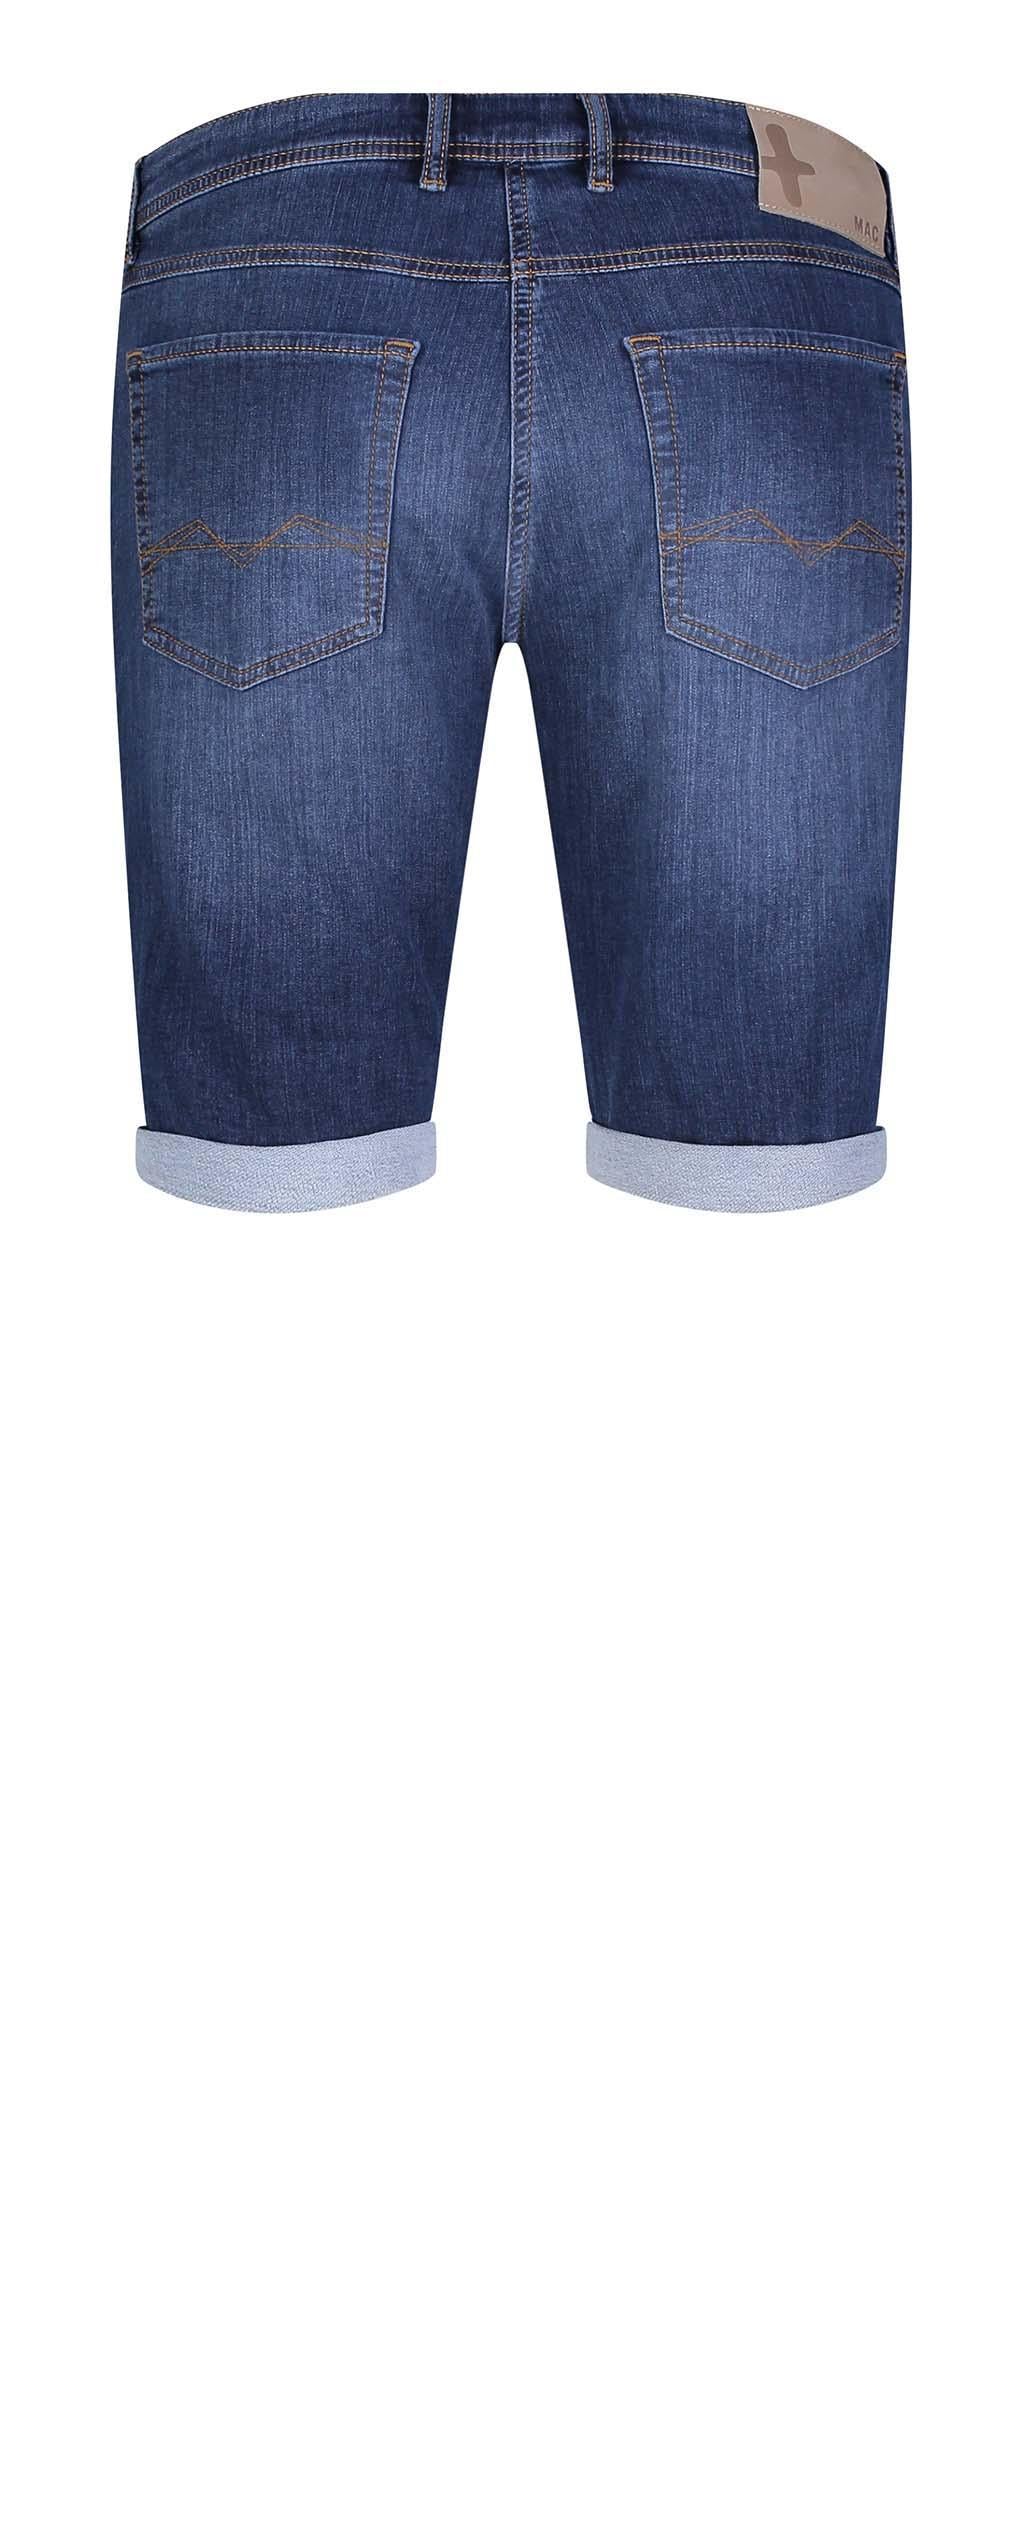 Men's Vintage Wash Jog'n Bermuda Shorts